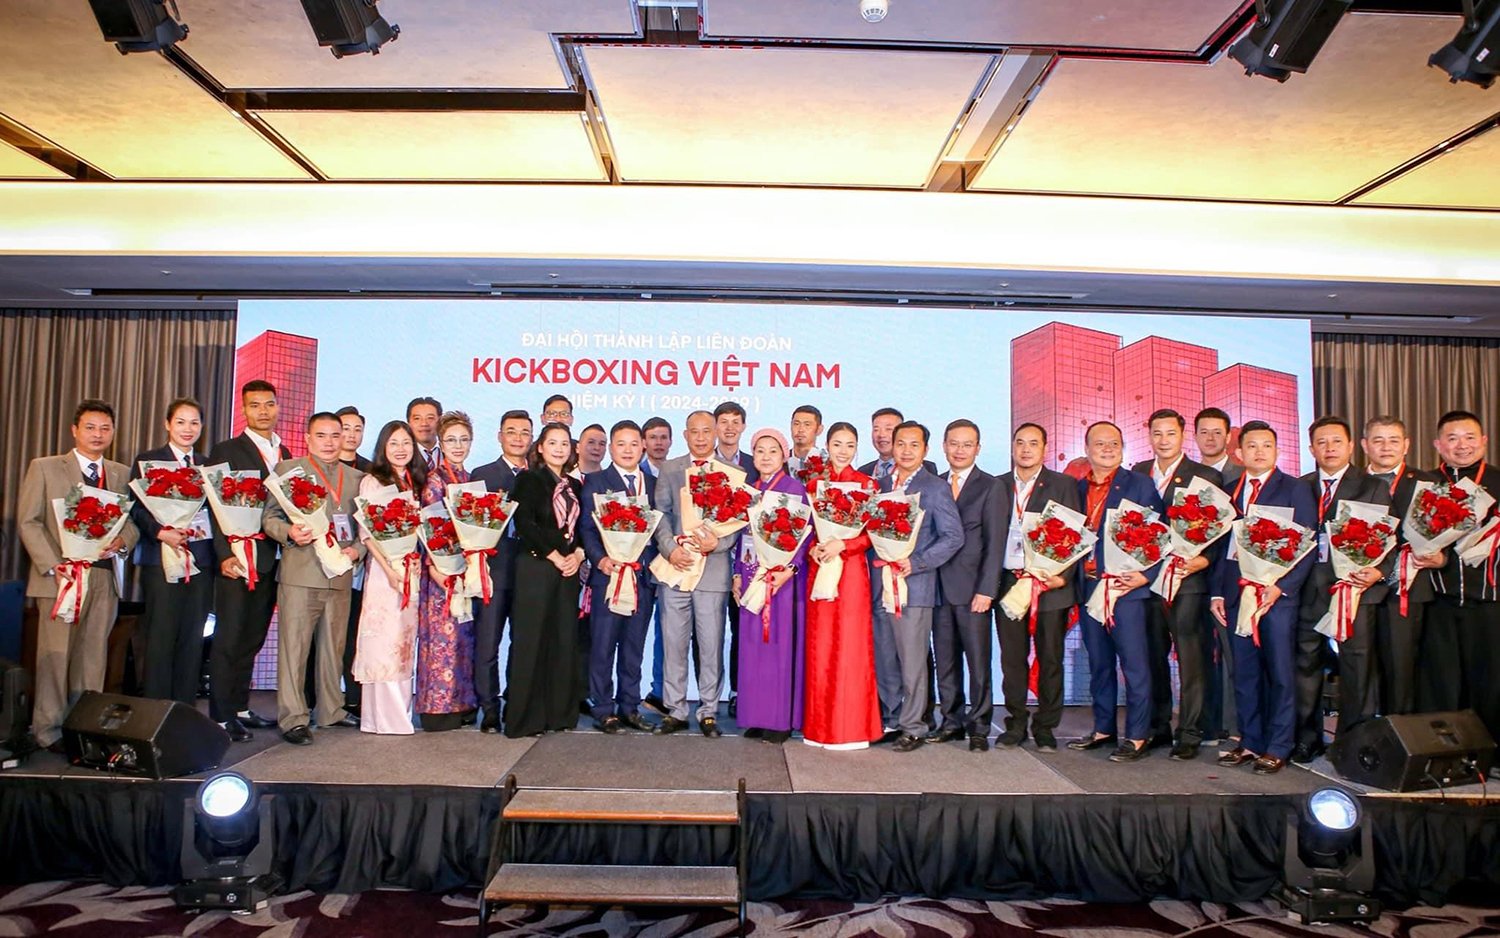 Liên đoàn Kickboxing Việt Nam chính thức thành lập: Bước phát triển toàn diện của Kickboxing Việt Nam